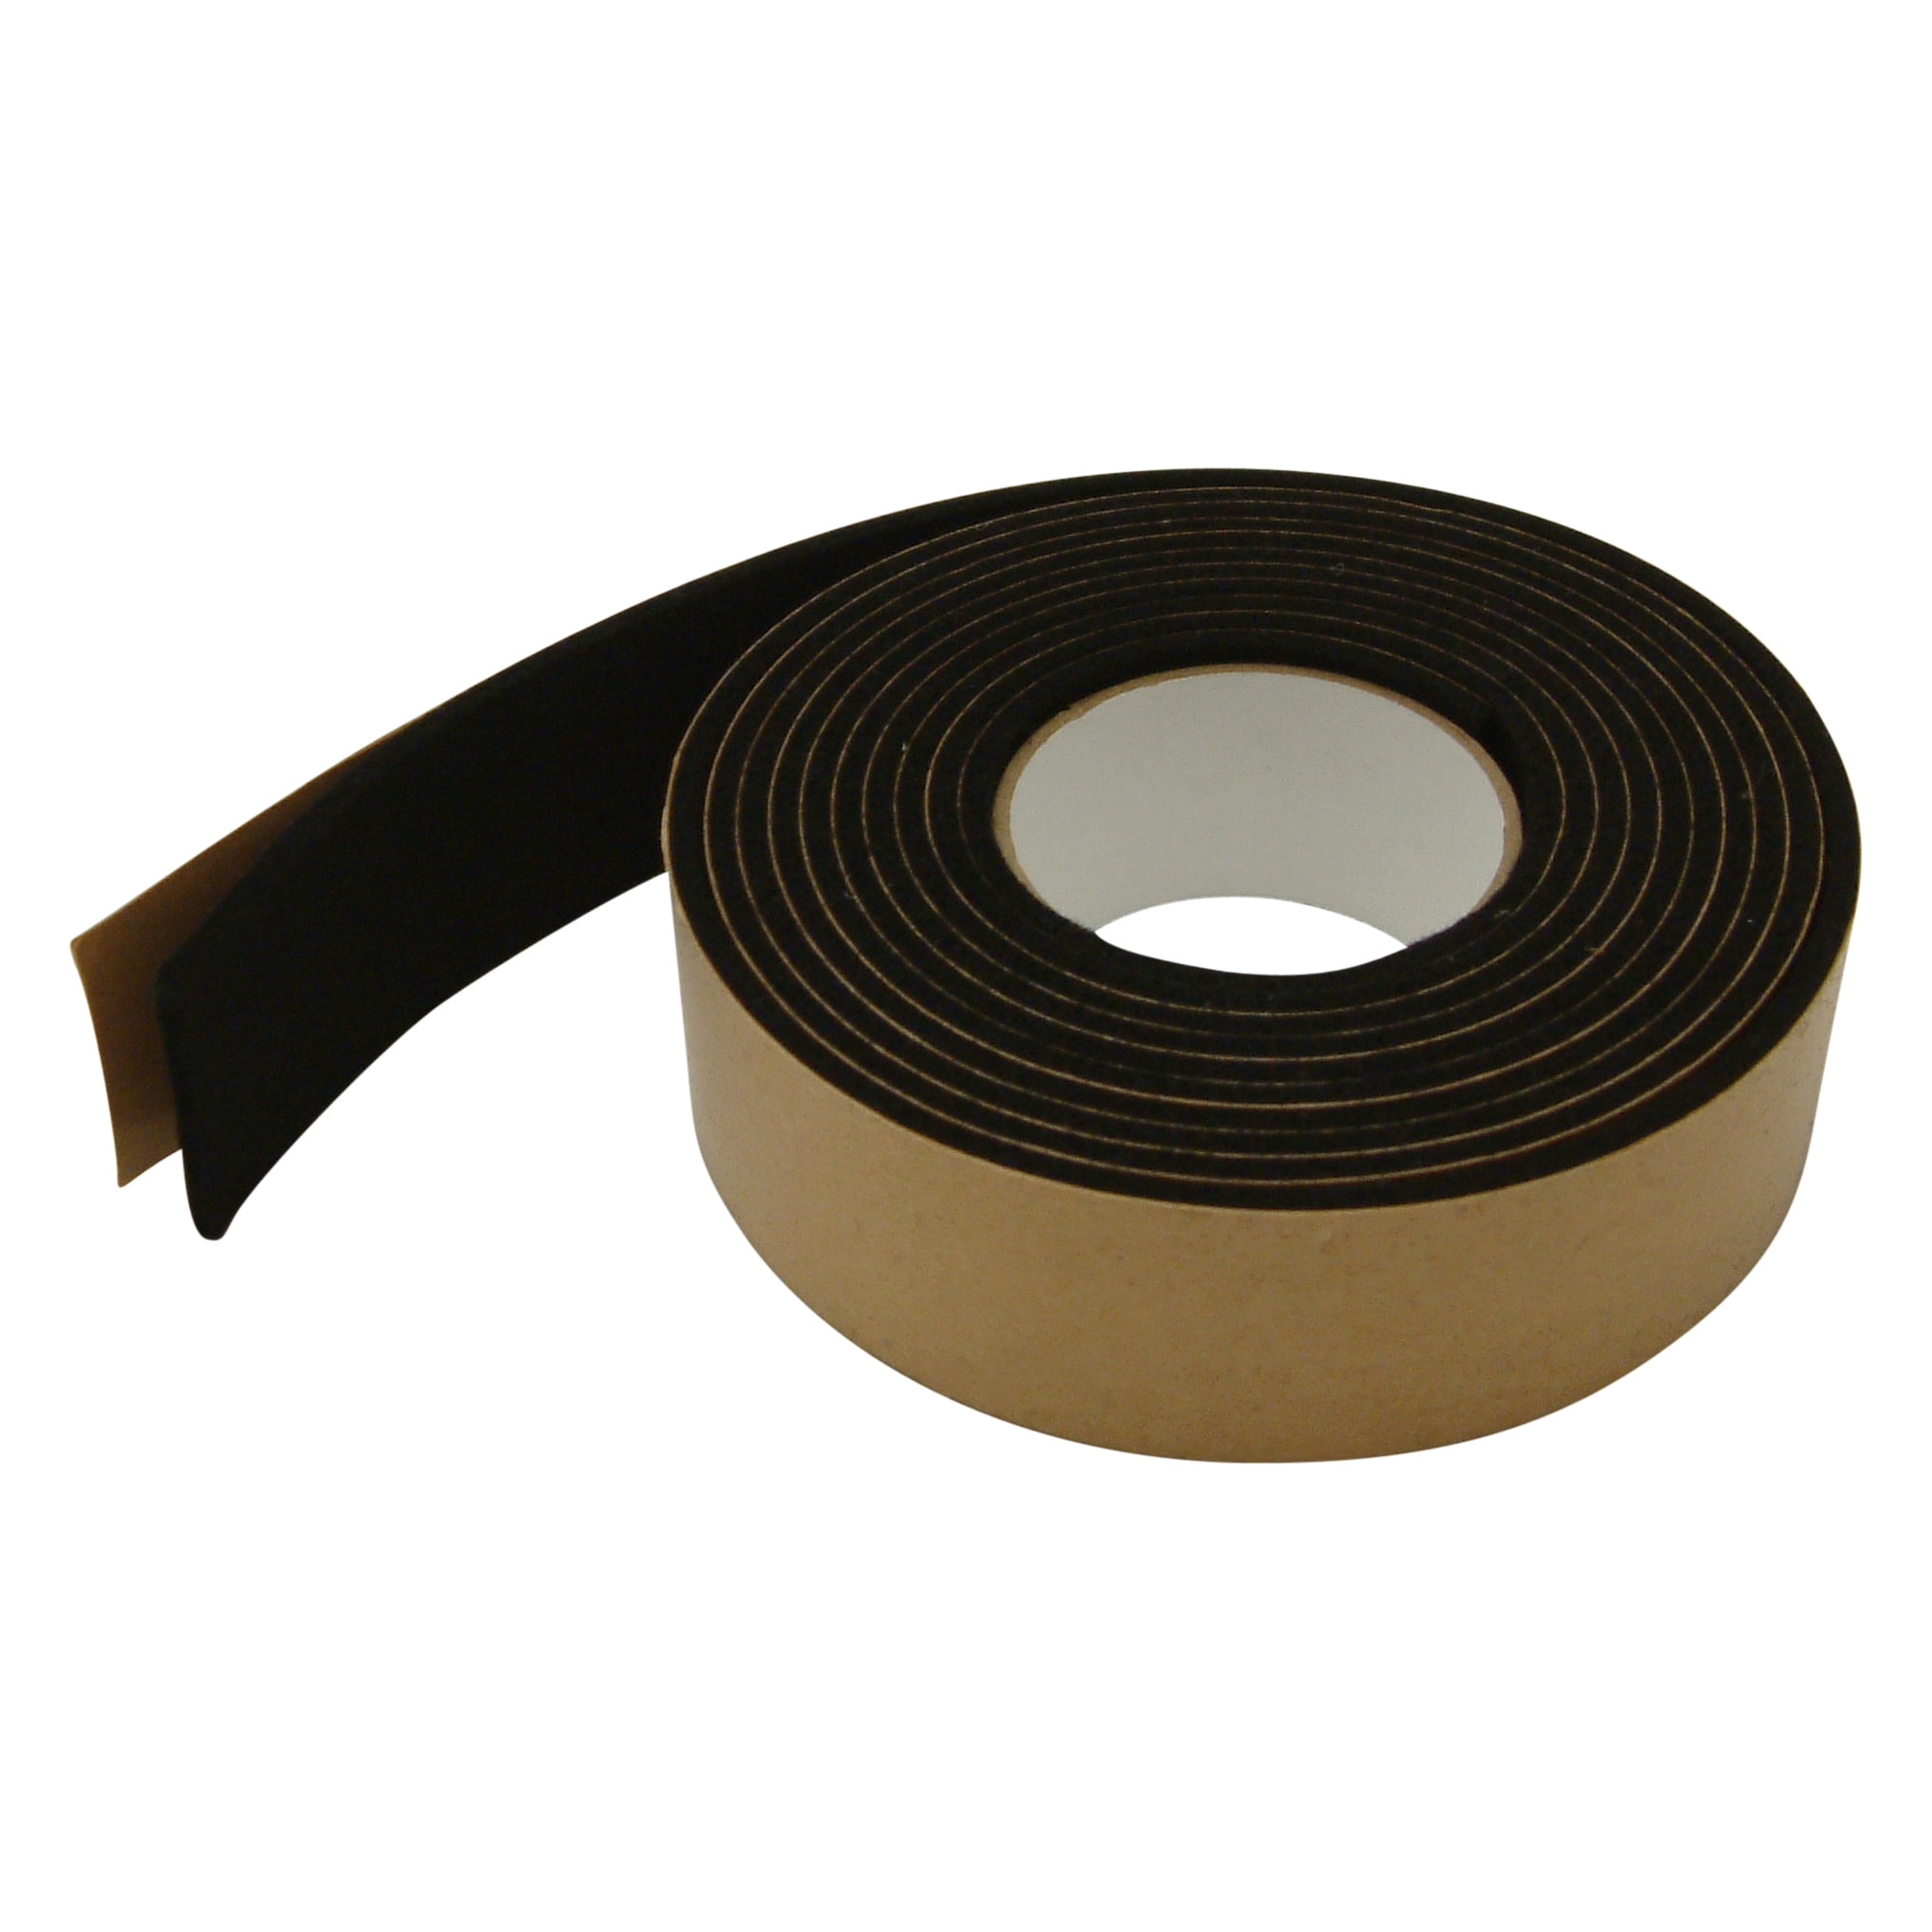 JVCC FELT-08 Polyester Felt Tape: 2 in. x 10 ft. (3mm thickness, White)